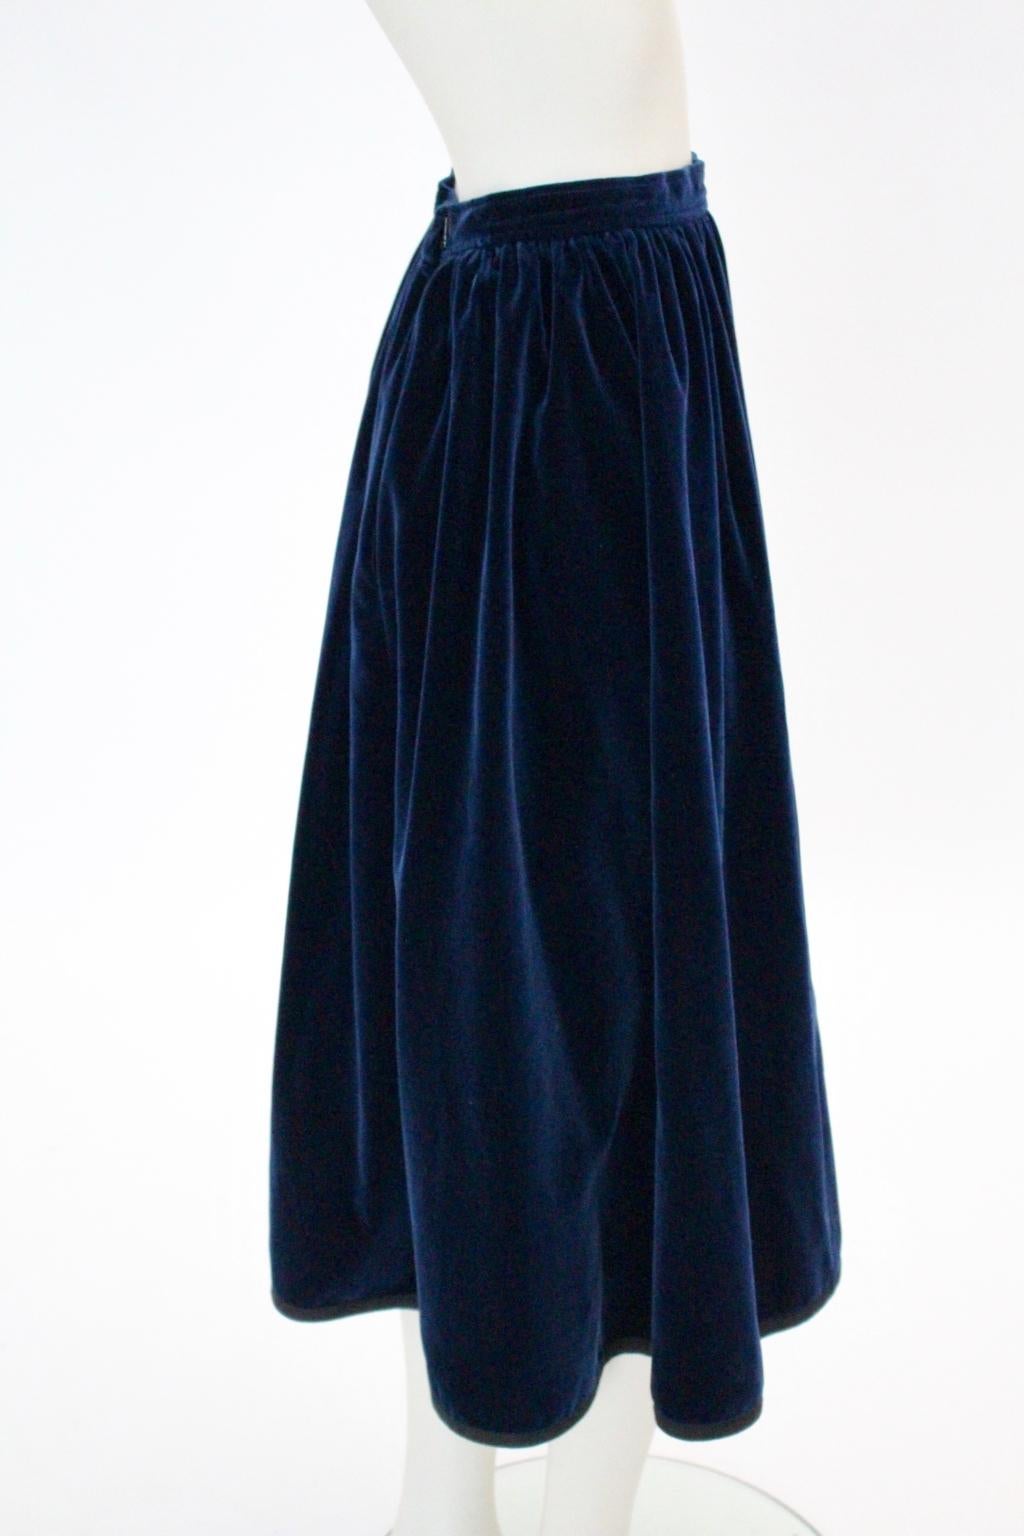 Blue Velvet Pleated Vintage Skirt by Yves Saint Laurent Rive Gauche For Sale 4